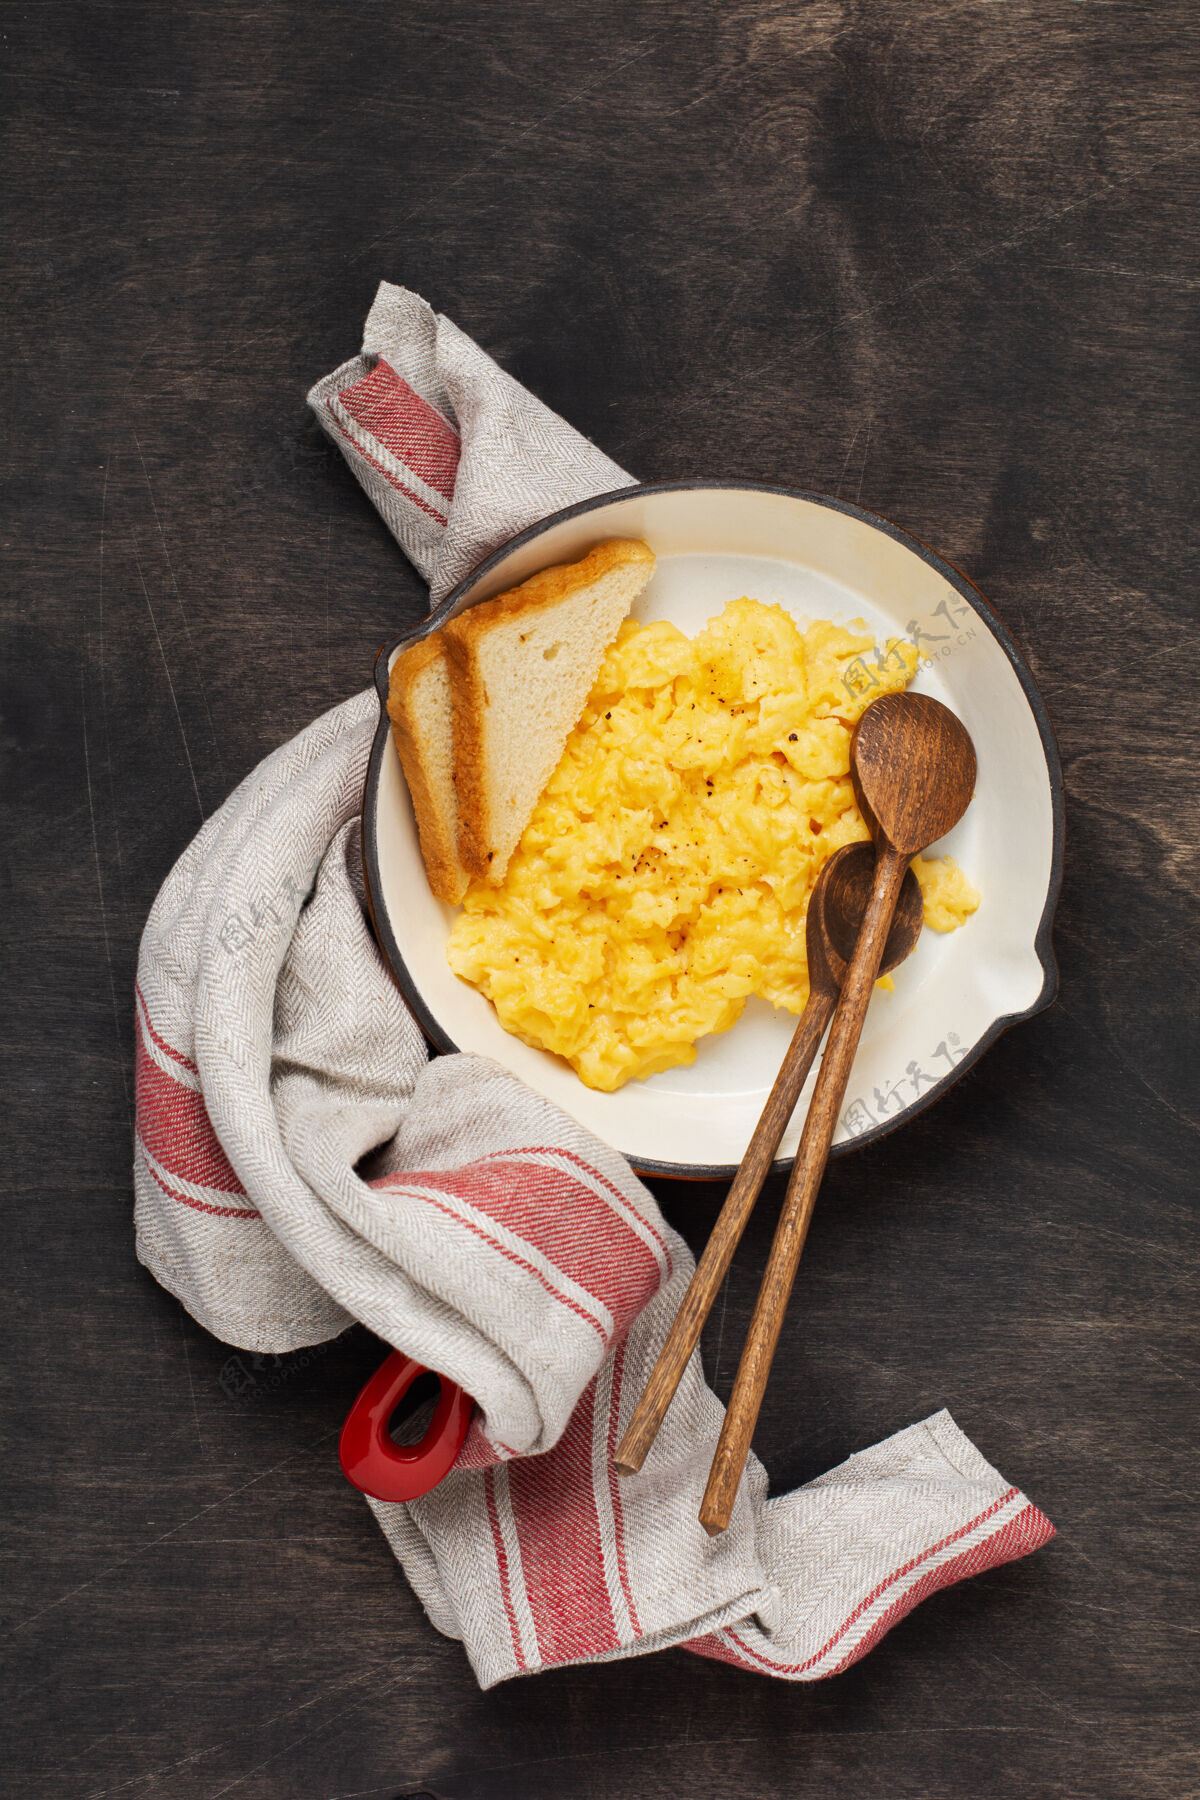 健康早餐用炒鸡蛋放在红色的旧煎锅上 深色的木桌上墙.传统英语早餐.上衣视野开阔煎蛋卷切炒菜